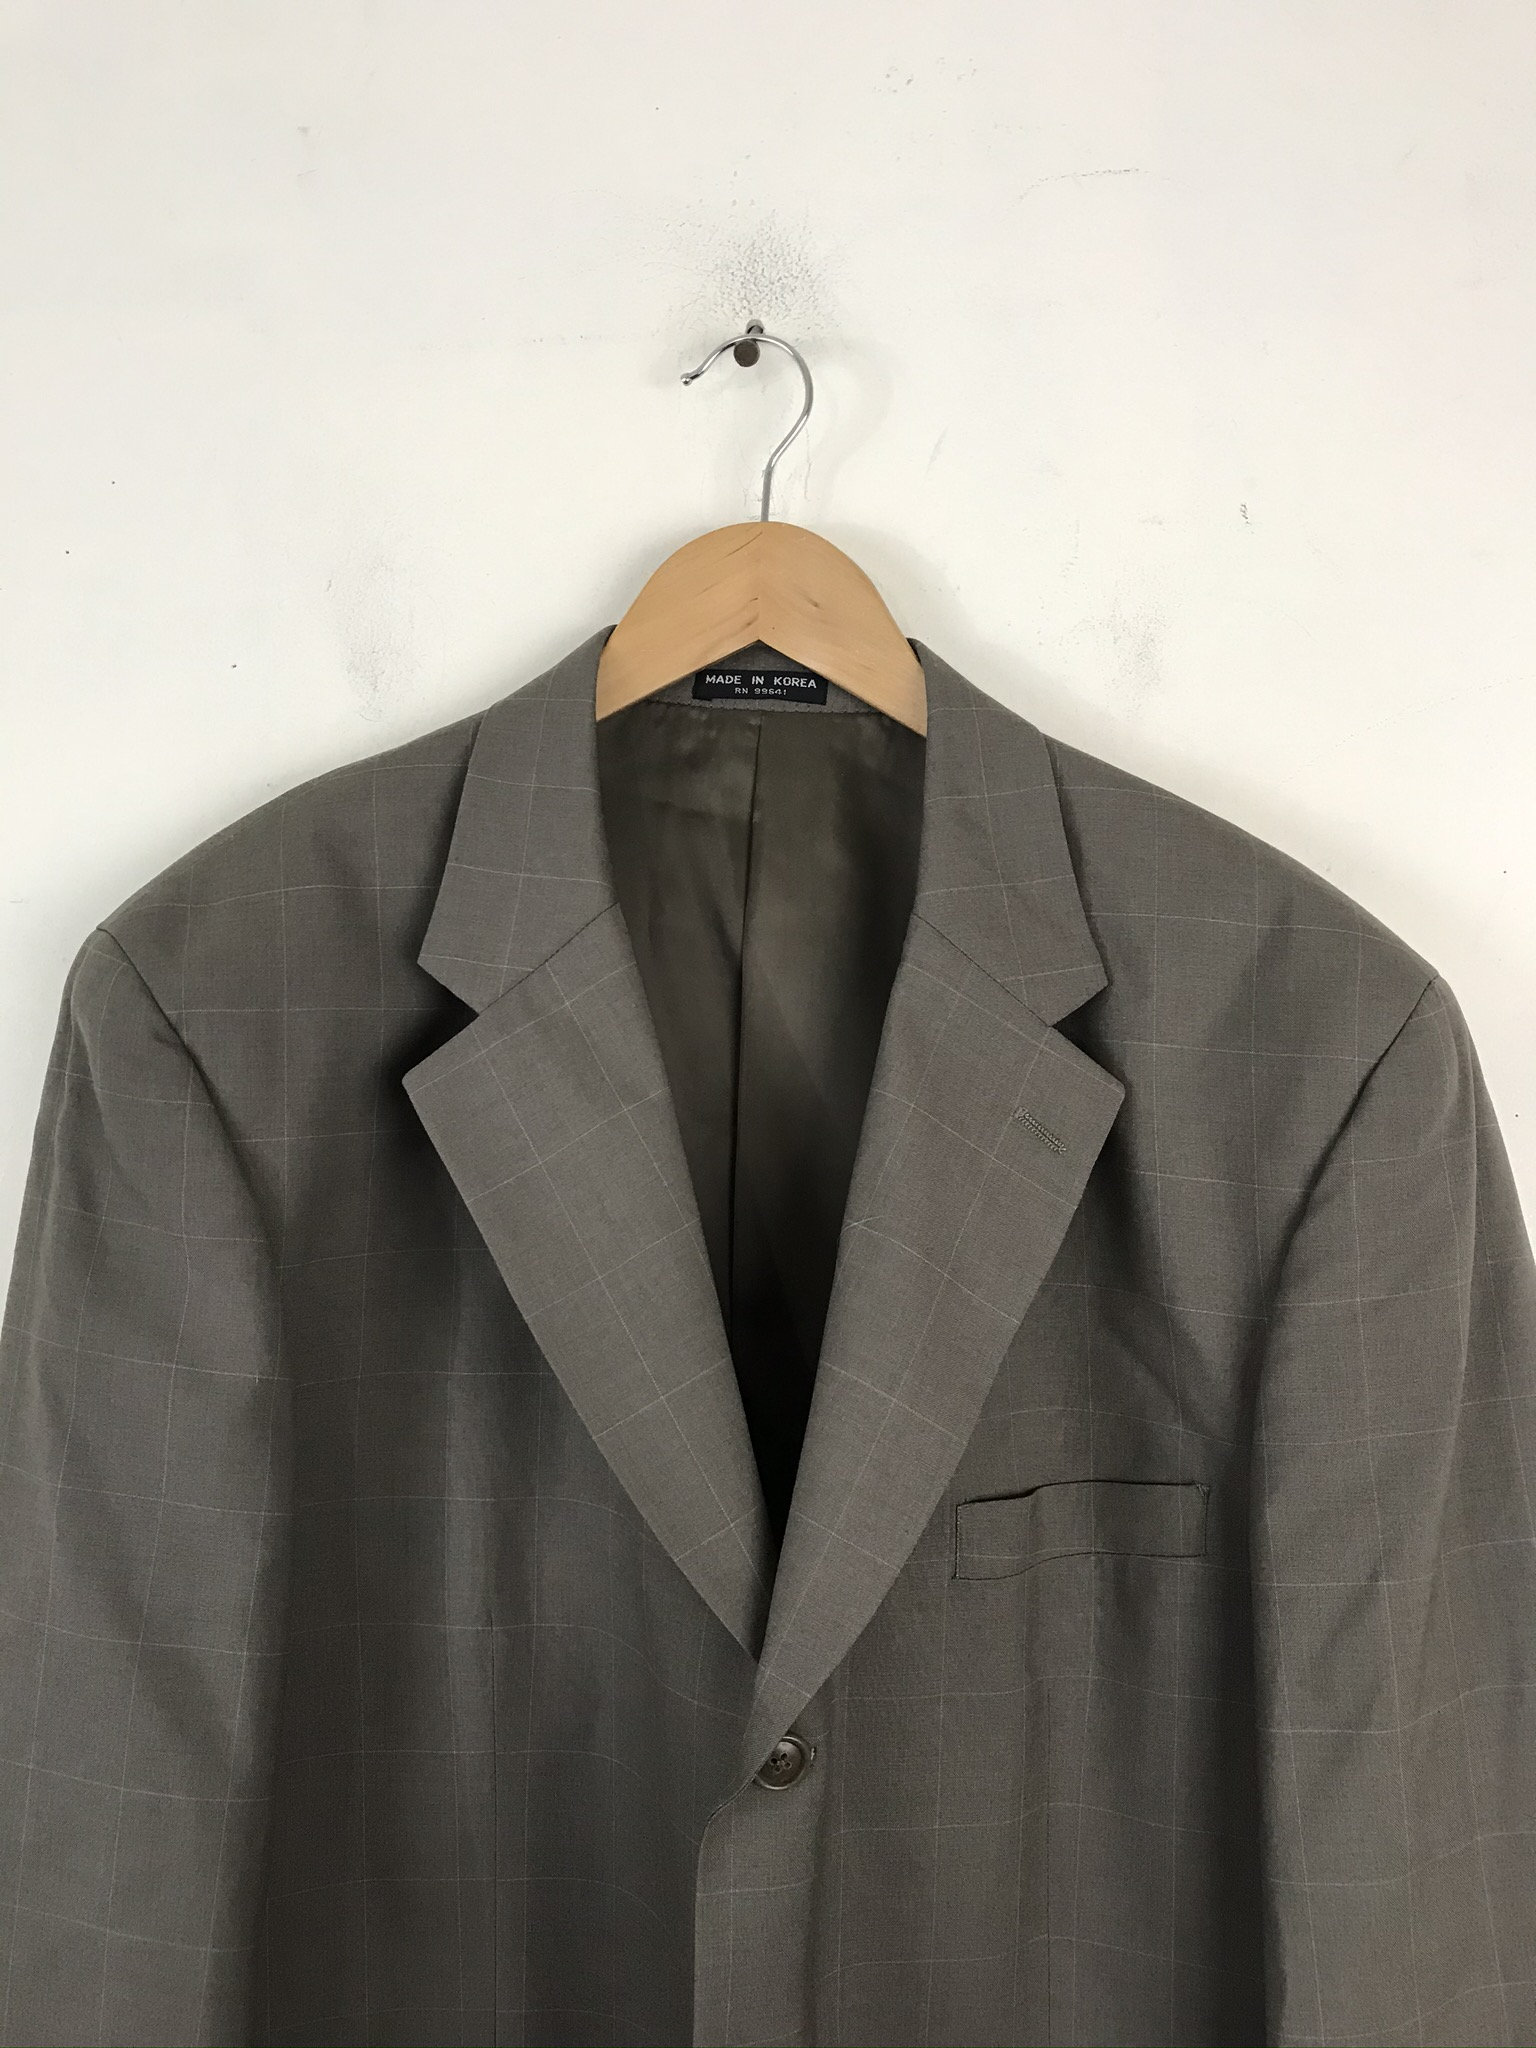 90s Tan Plaid Two Piece Suit Mens Size 43R & 38W Preppy Plaid - Etsy